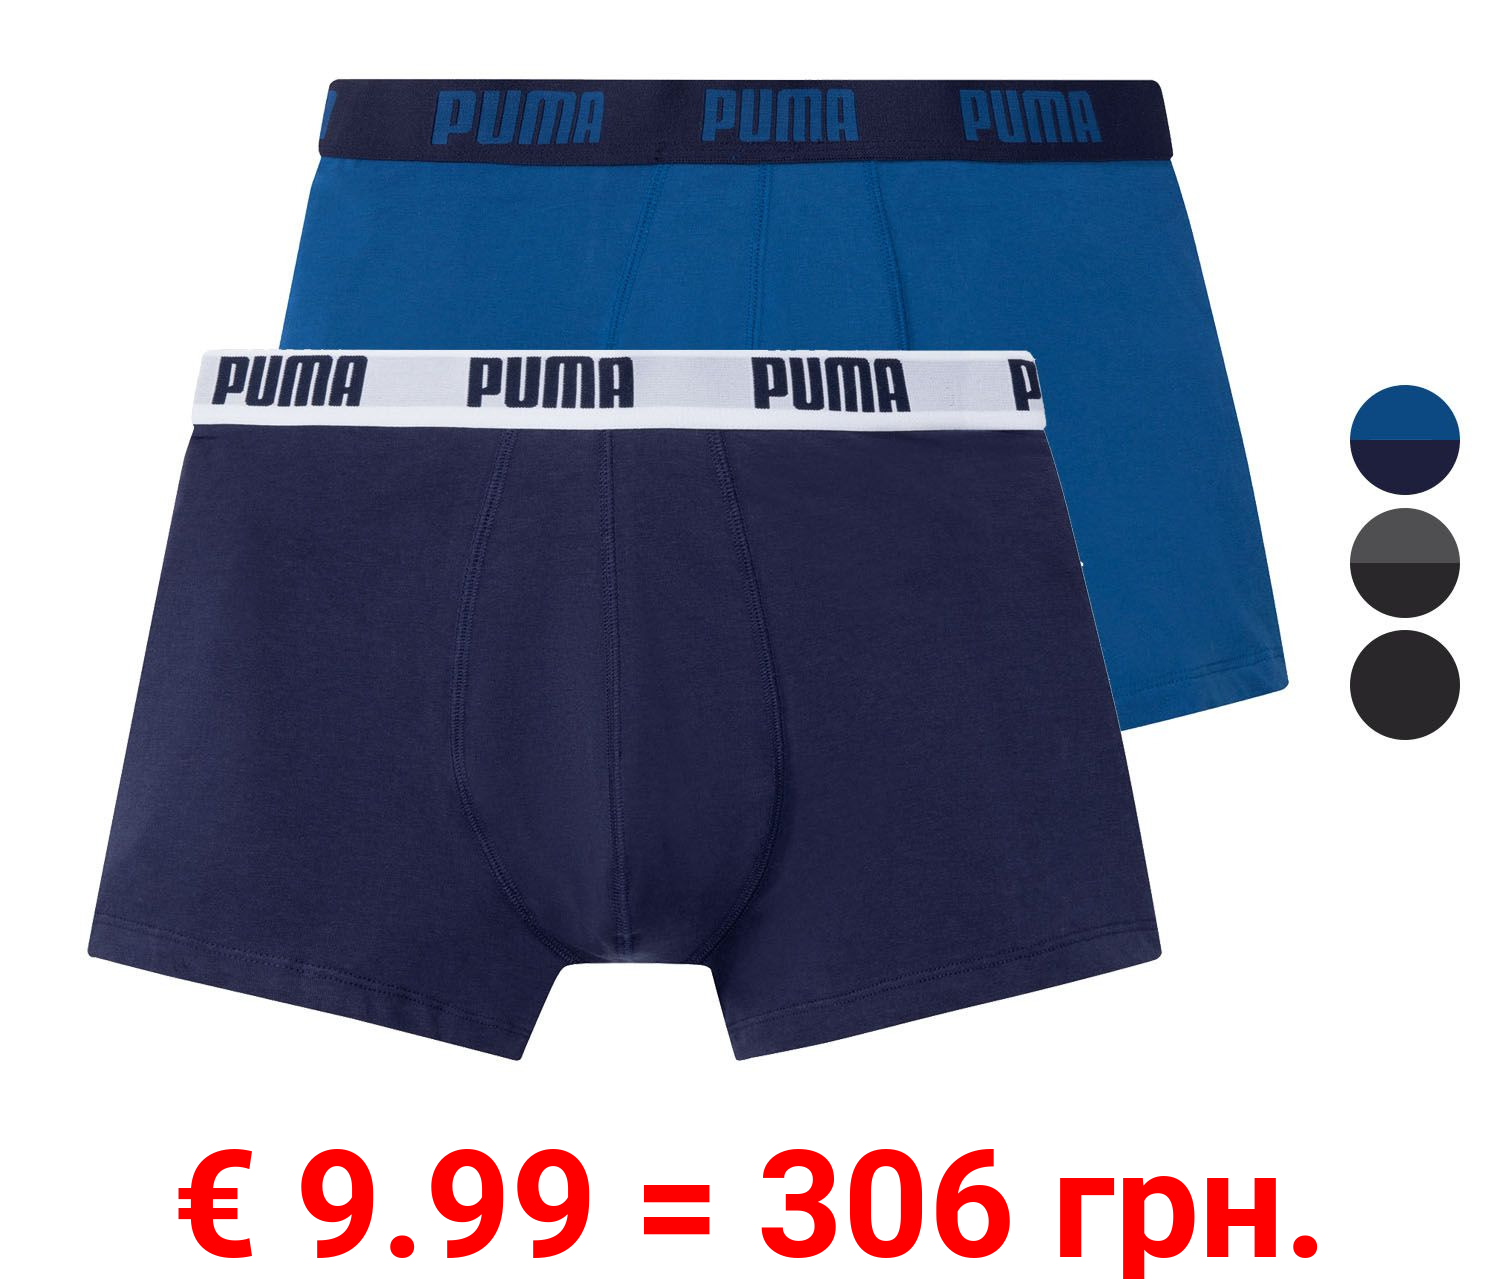 Puma Boxershorts Herren, 2 Stück, Slim Fit